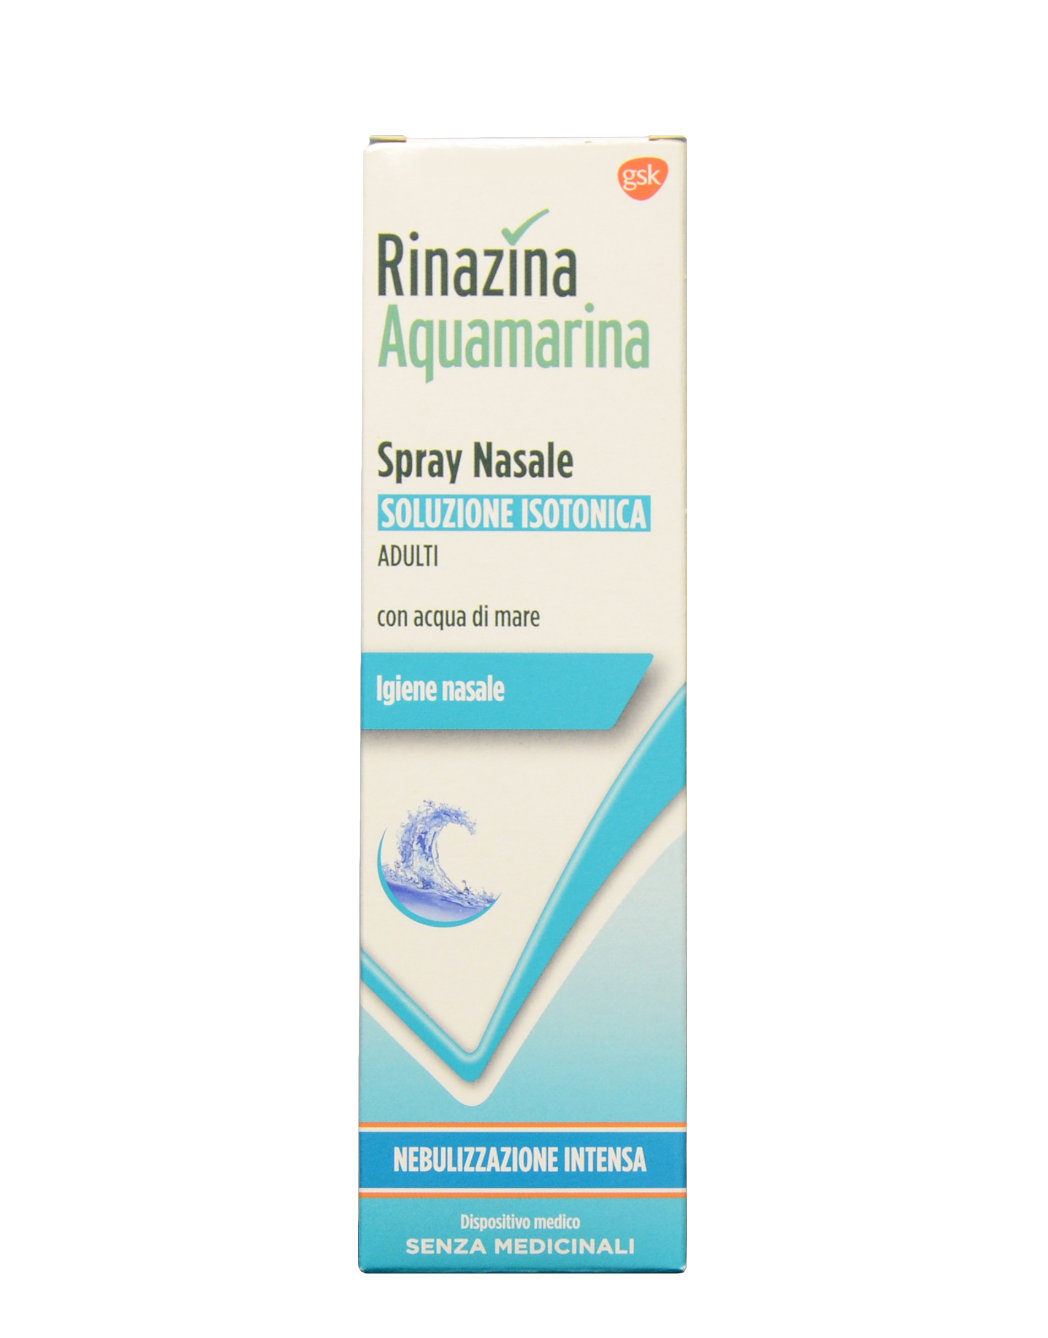 Rinazina Aquamarina Spray Nasale - Soluzione Isotonica Nebulizzazione  Intensa di Rinazina, 100ml 